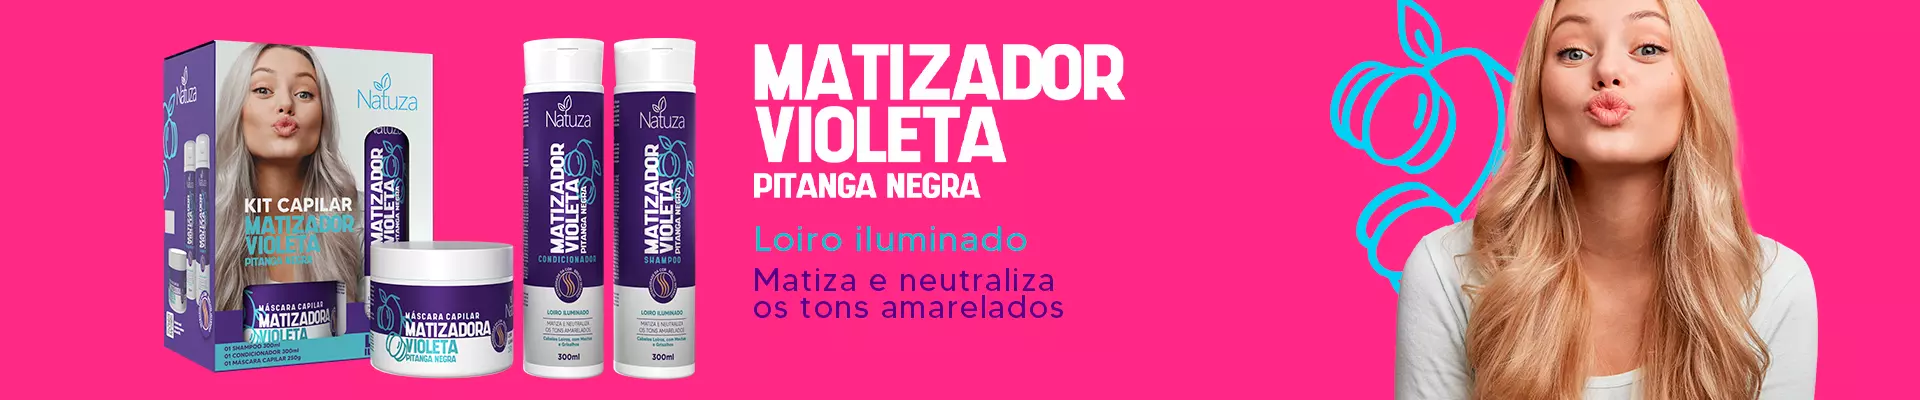 Banner Matizador Violeta